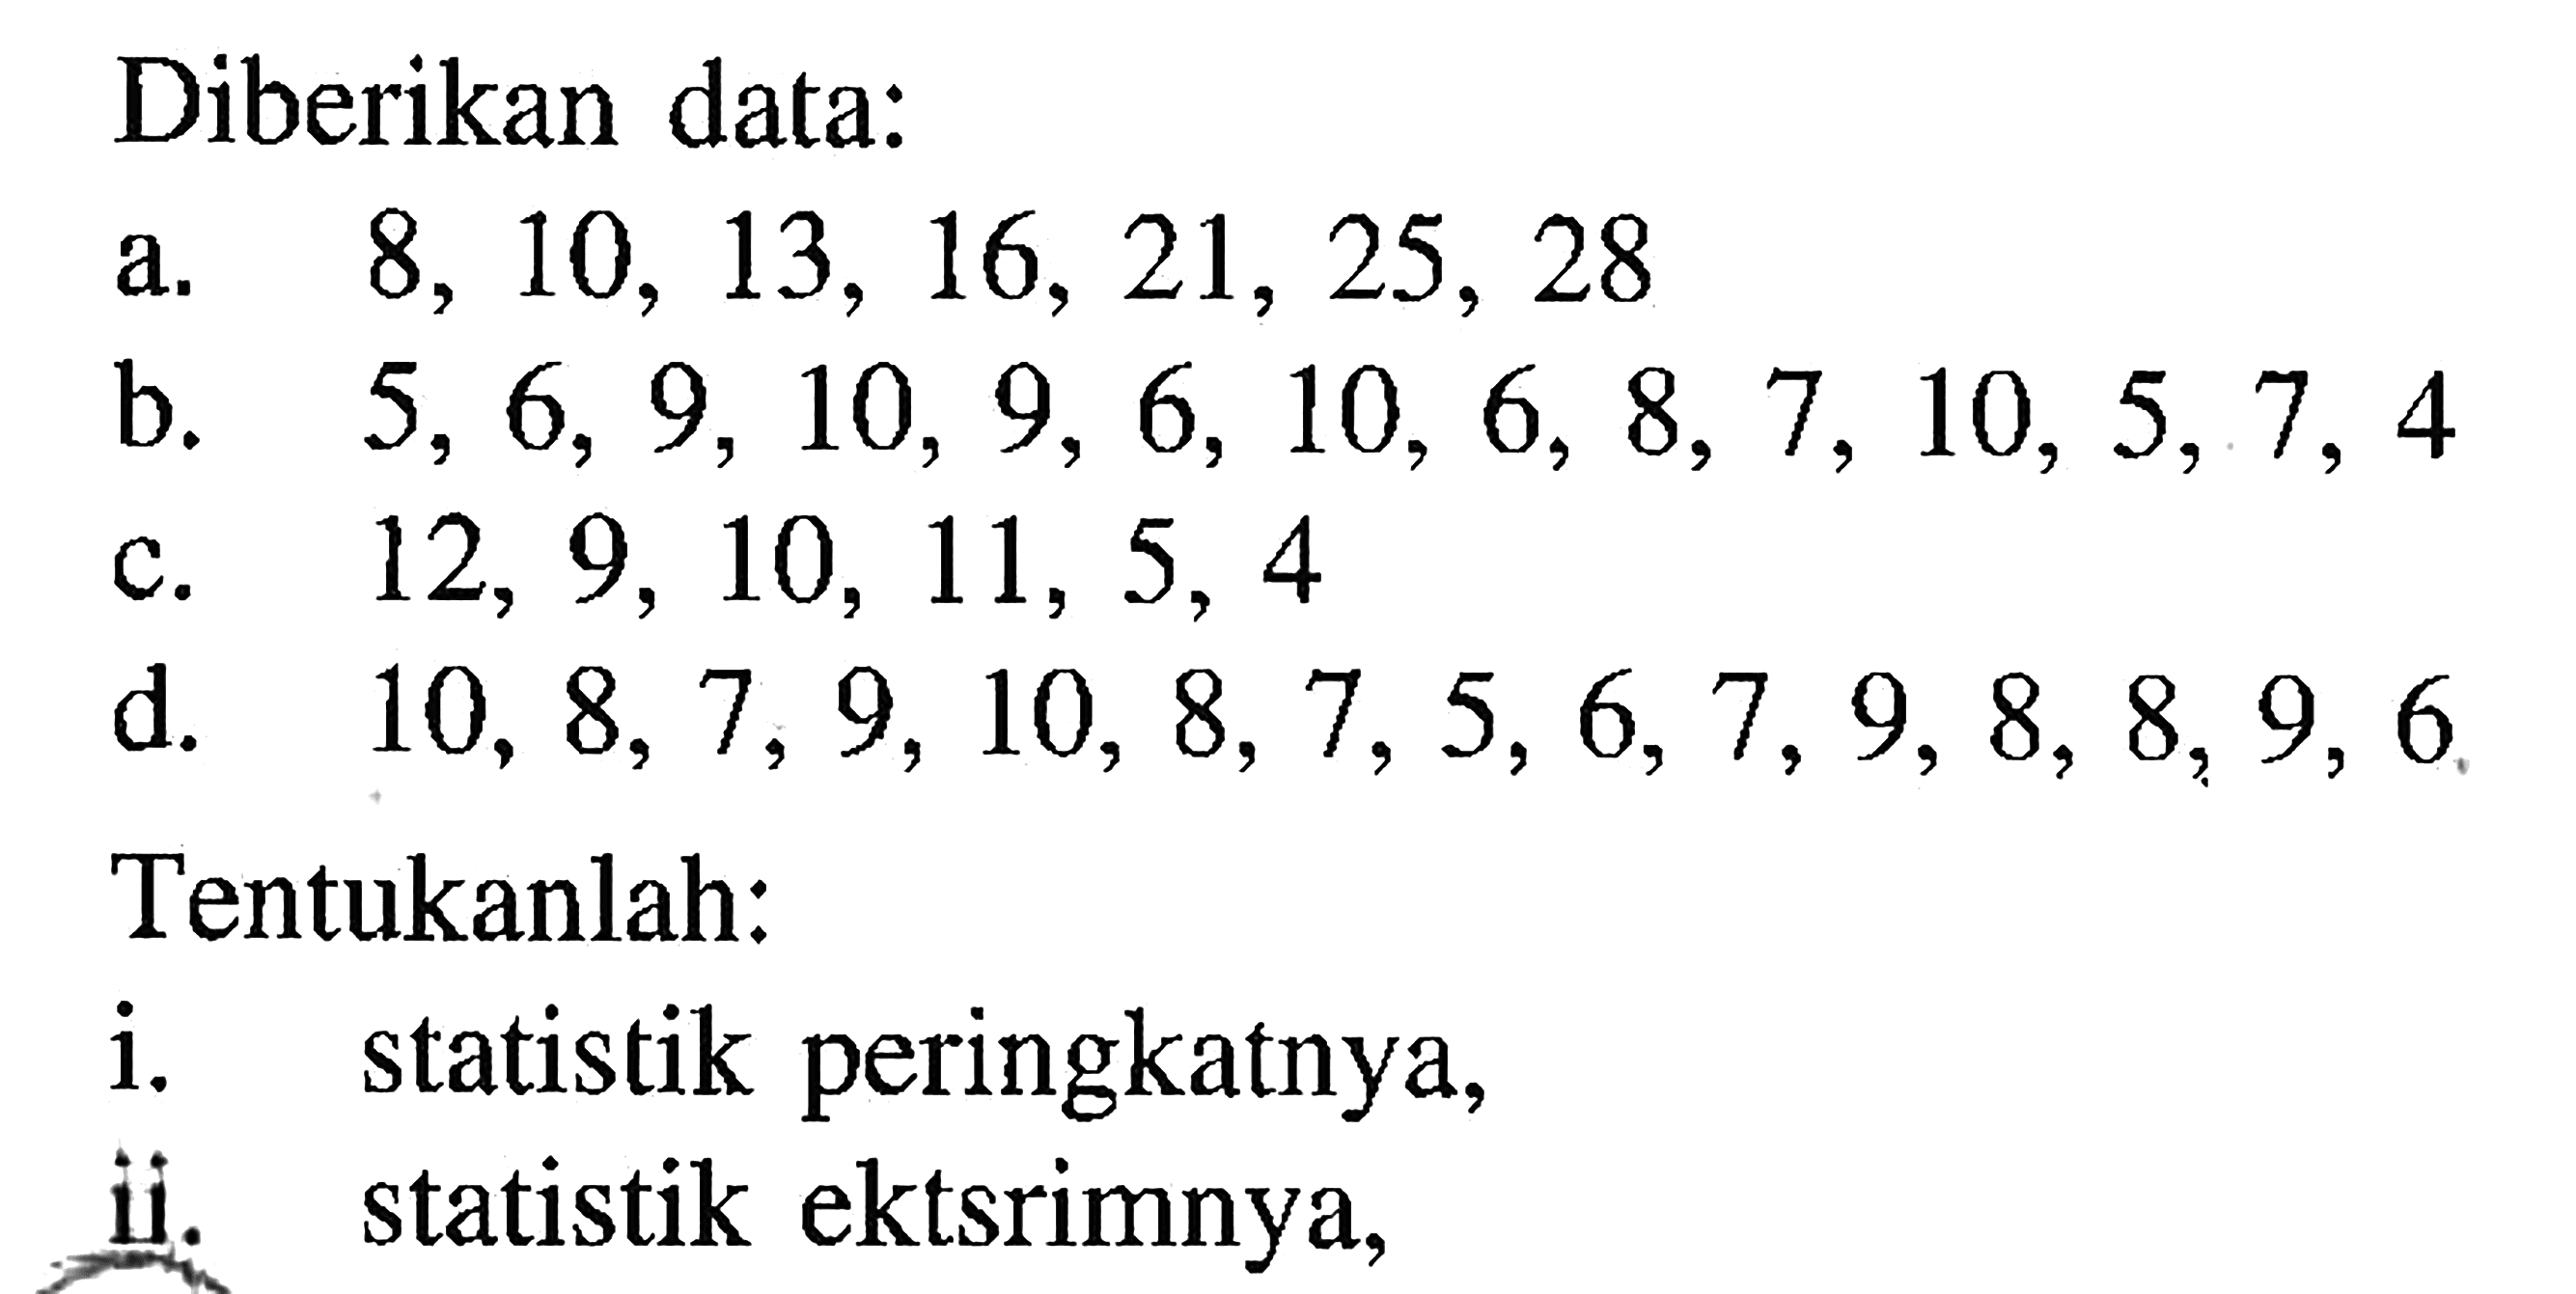 Diberikan data: a. 8,10,13,16,21,25,28 b. 5,6,9,10,9,6,10,6,8,7,10,5,7,4 c. 12,9,10,11,5,4 d. 10,8,7,9,10,8,7,5,6,7,9,8,8,9,6 Tentukanlah:i. statistik peringkatnya, ii. statistik ekstrimnya,